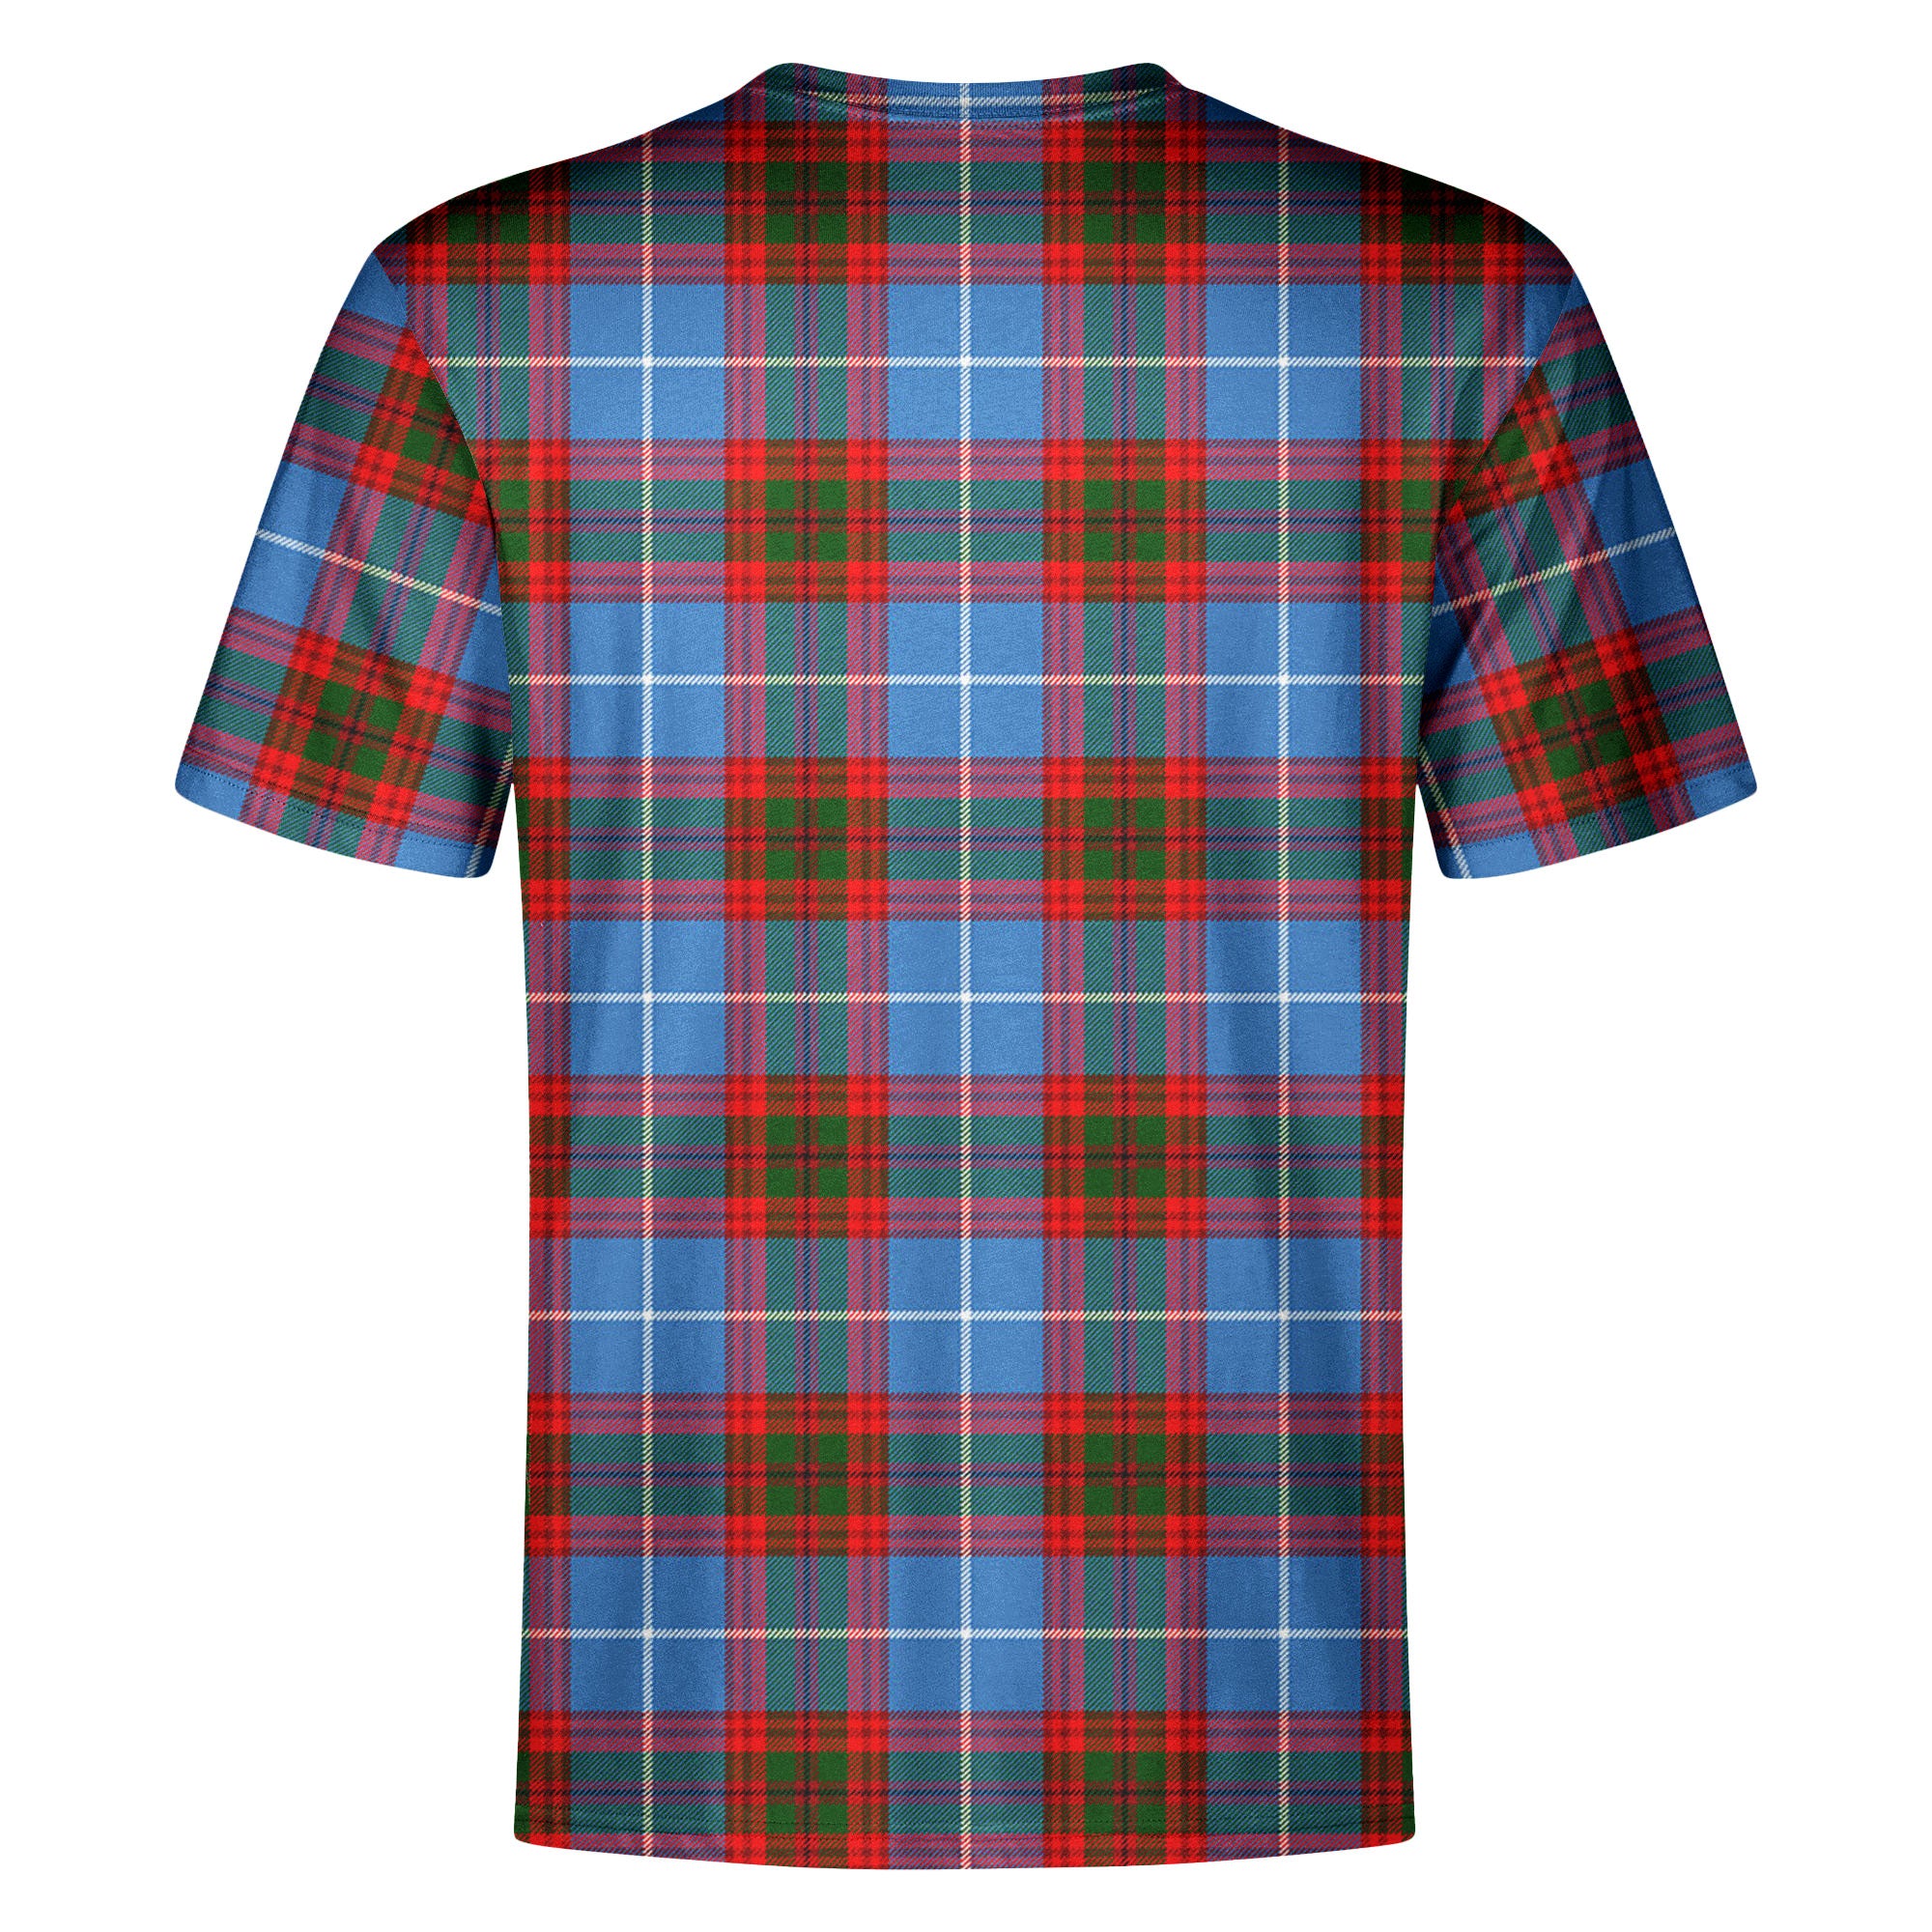 Pentland Tartan Crest T-shirt